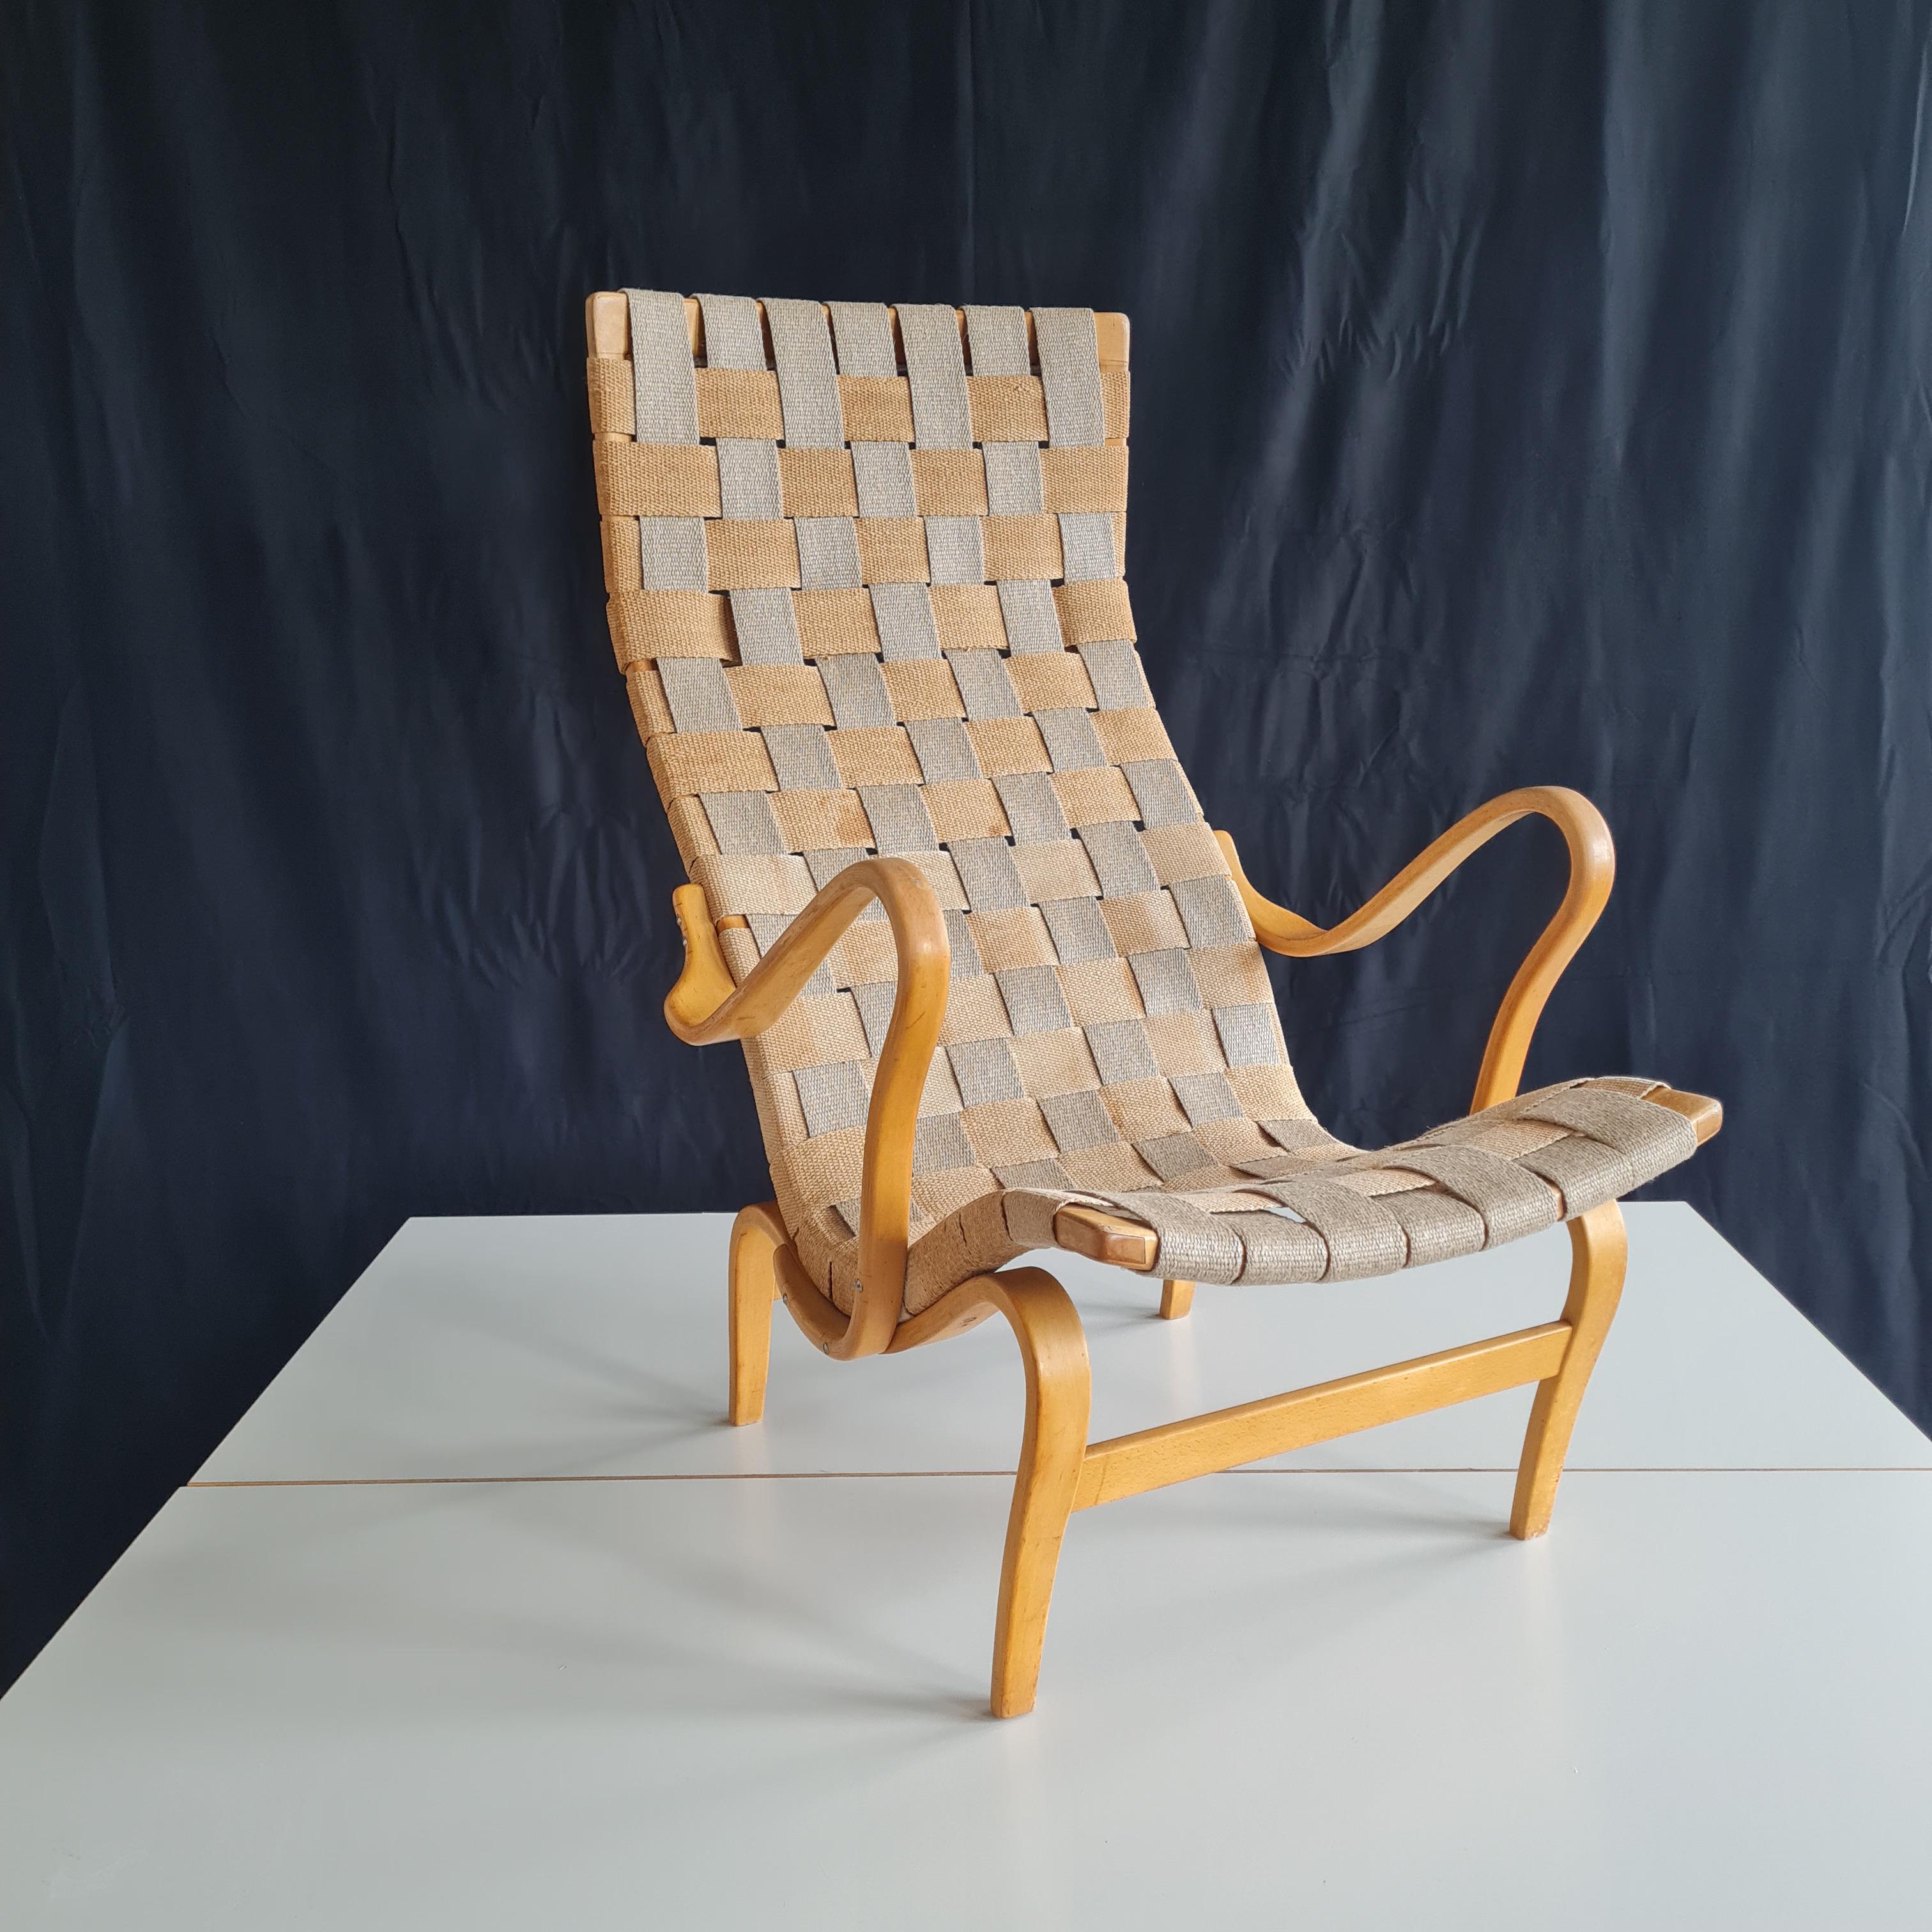 MidCentury 'Pernilla' Sessel entworfen von Bruno Mathsson, original Vintage-Design skandinavisch-dänischer Stil.
Die Polsterung wurde professionell restauriert, Sitzflächen und der Holzrahmen sind dabei vollständig original geblieben und befinden